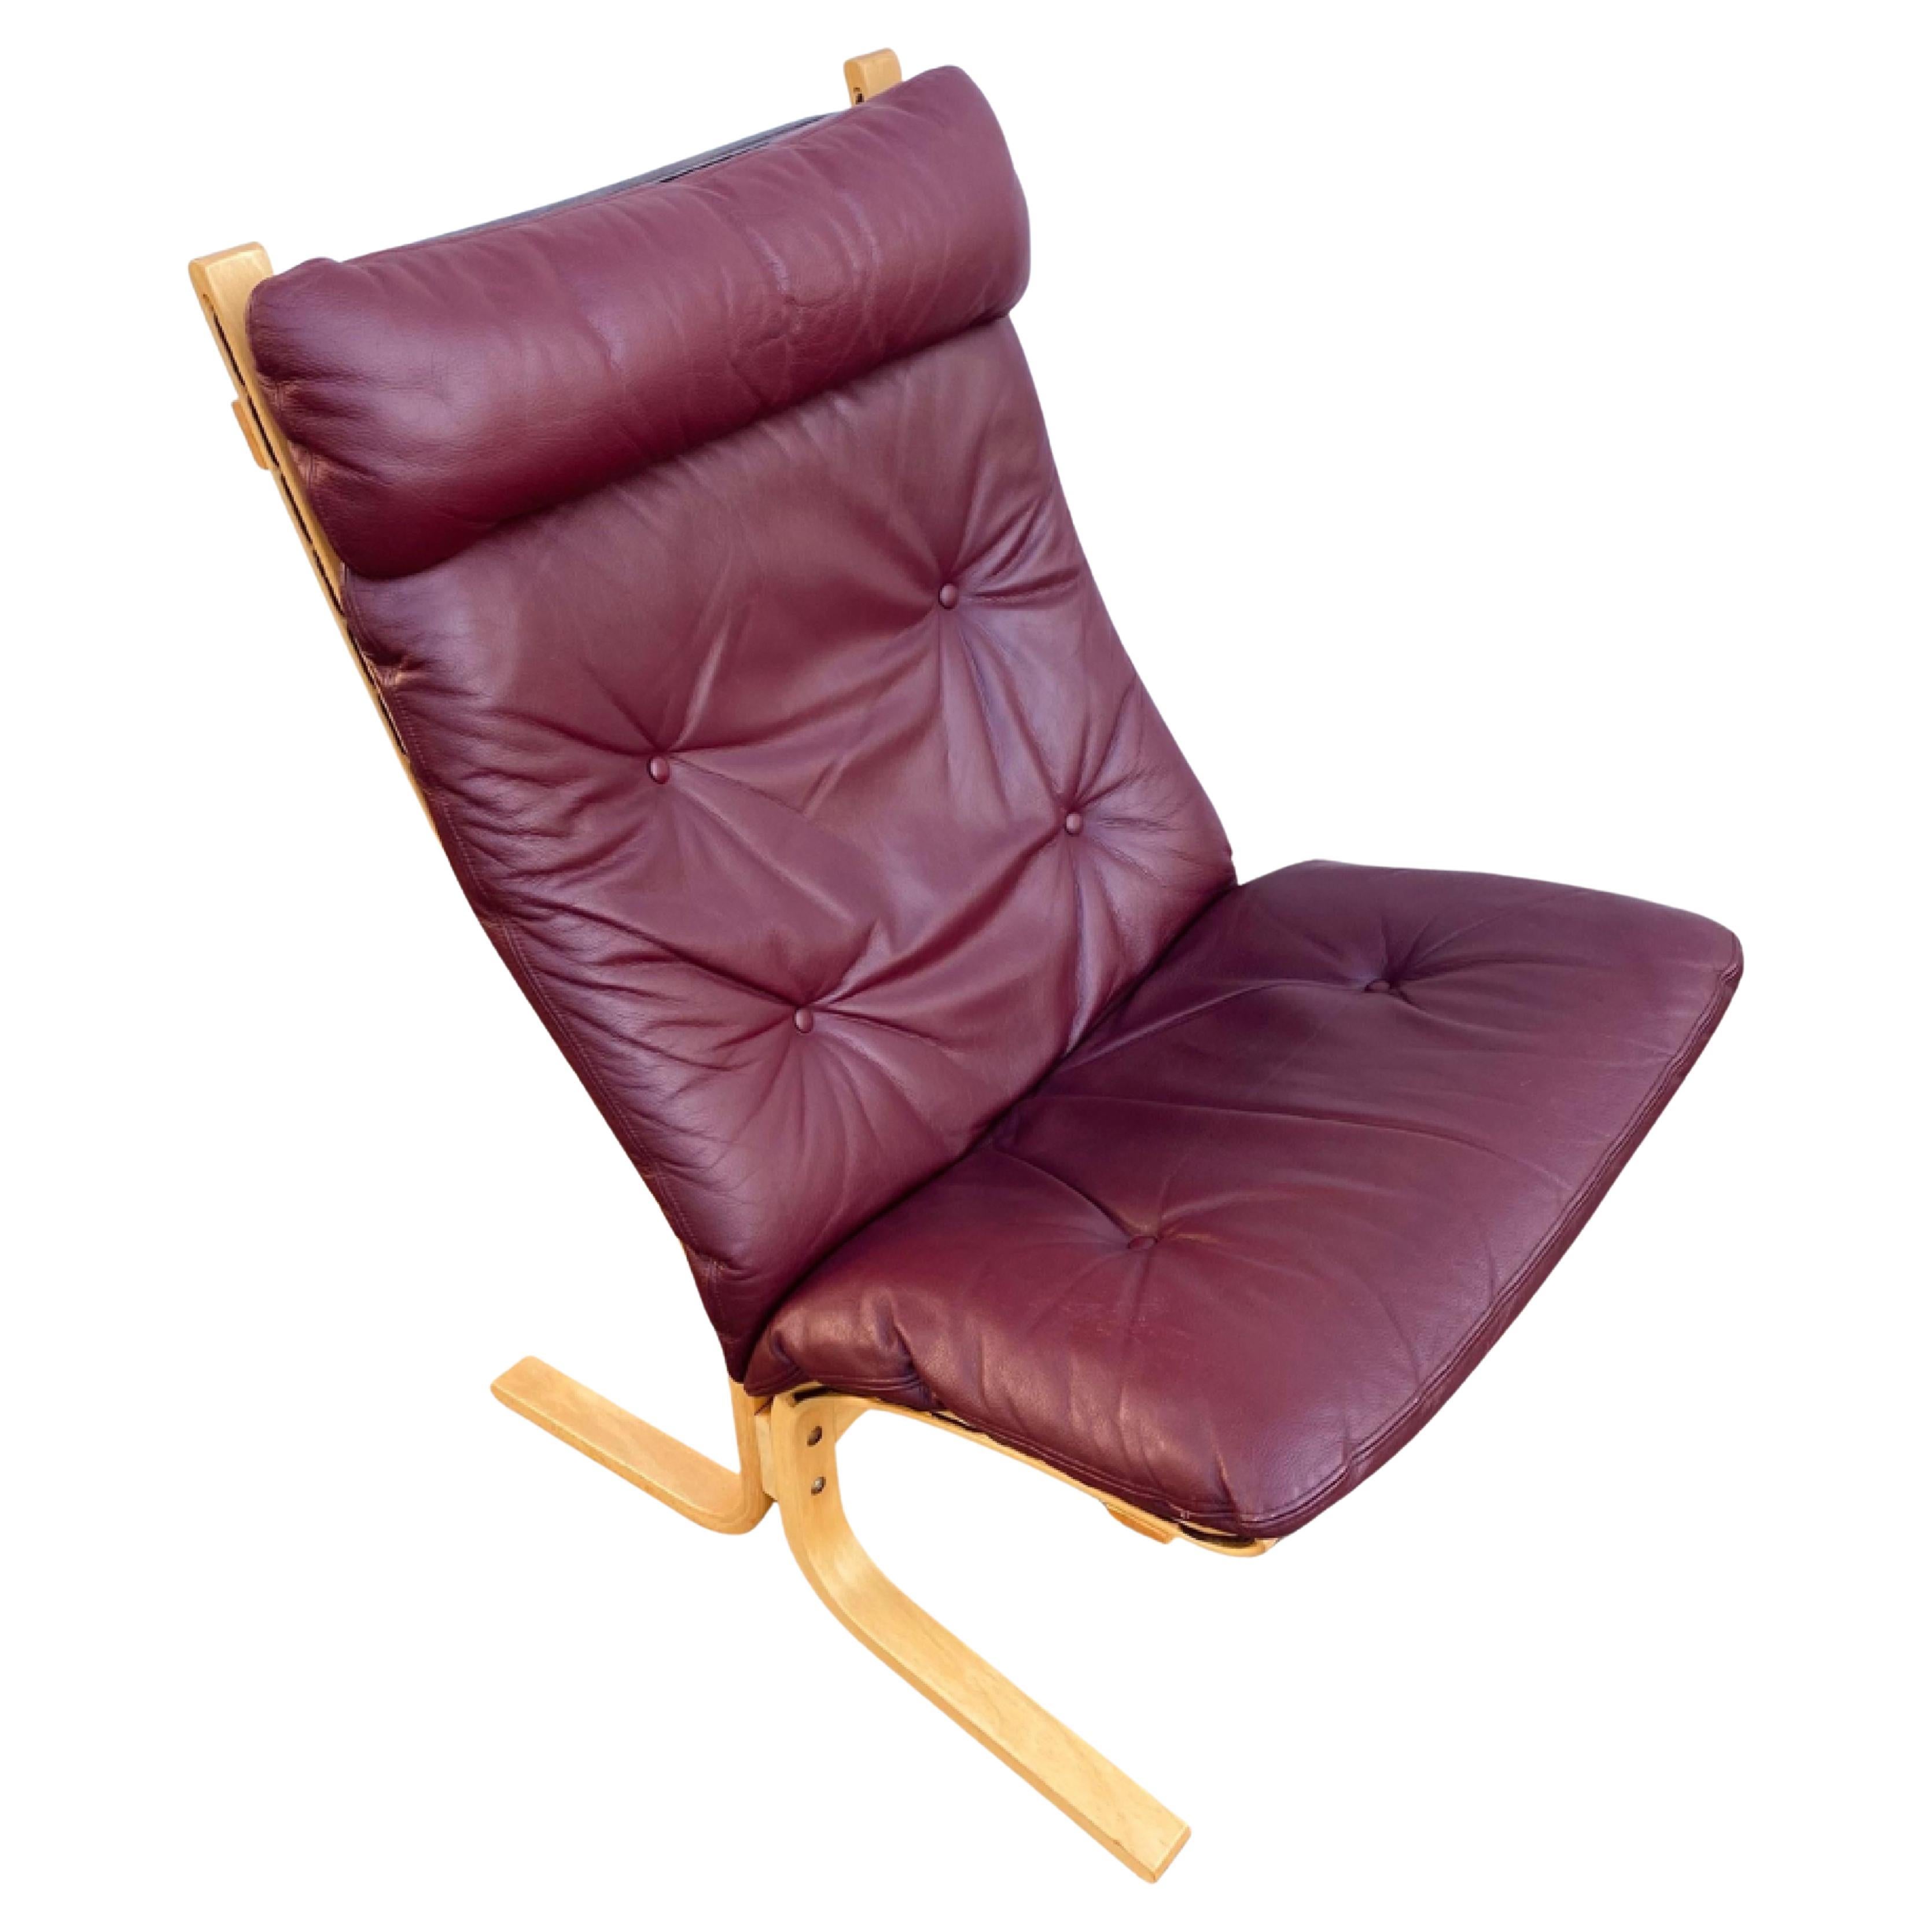 Ingmar Relling "Siesta" Lounge Chair